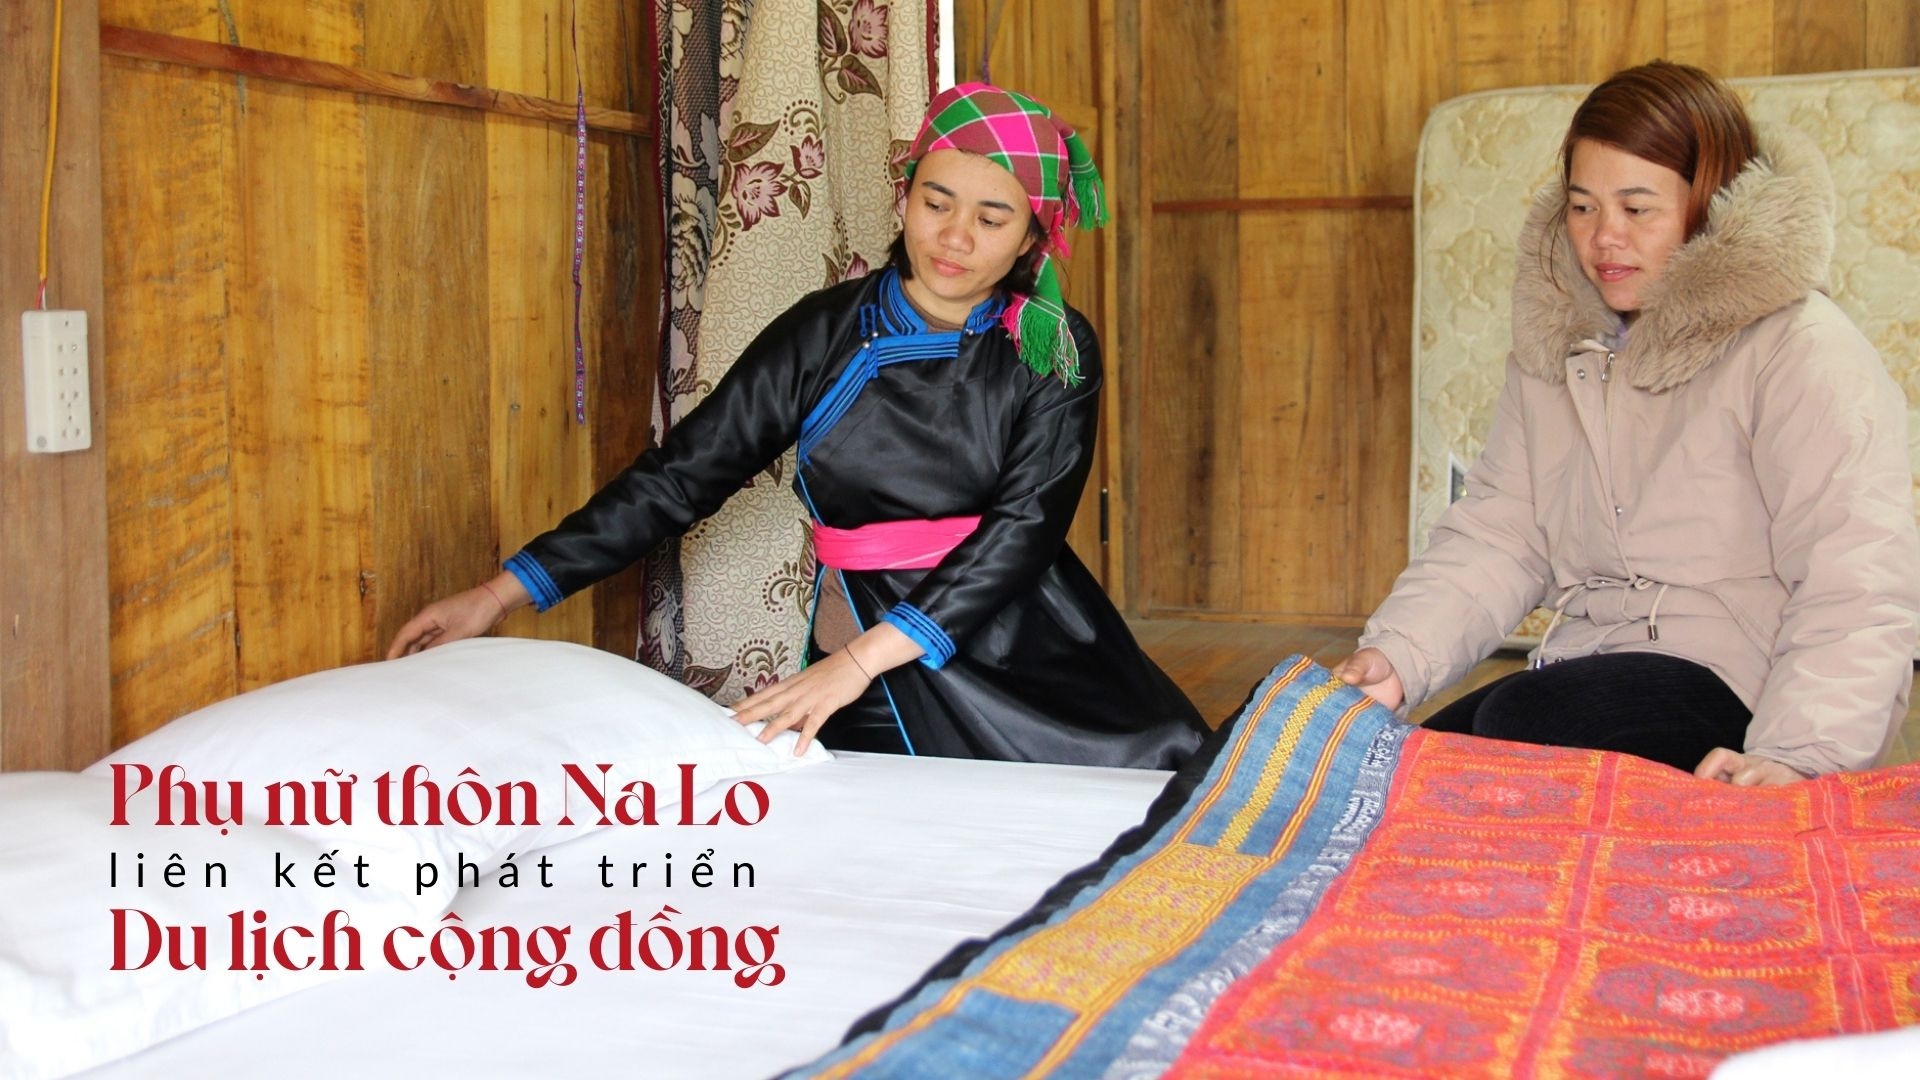 Phụ nữ thôn Na Lo liên kết phát triển du lịch cộng đồng